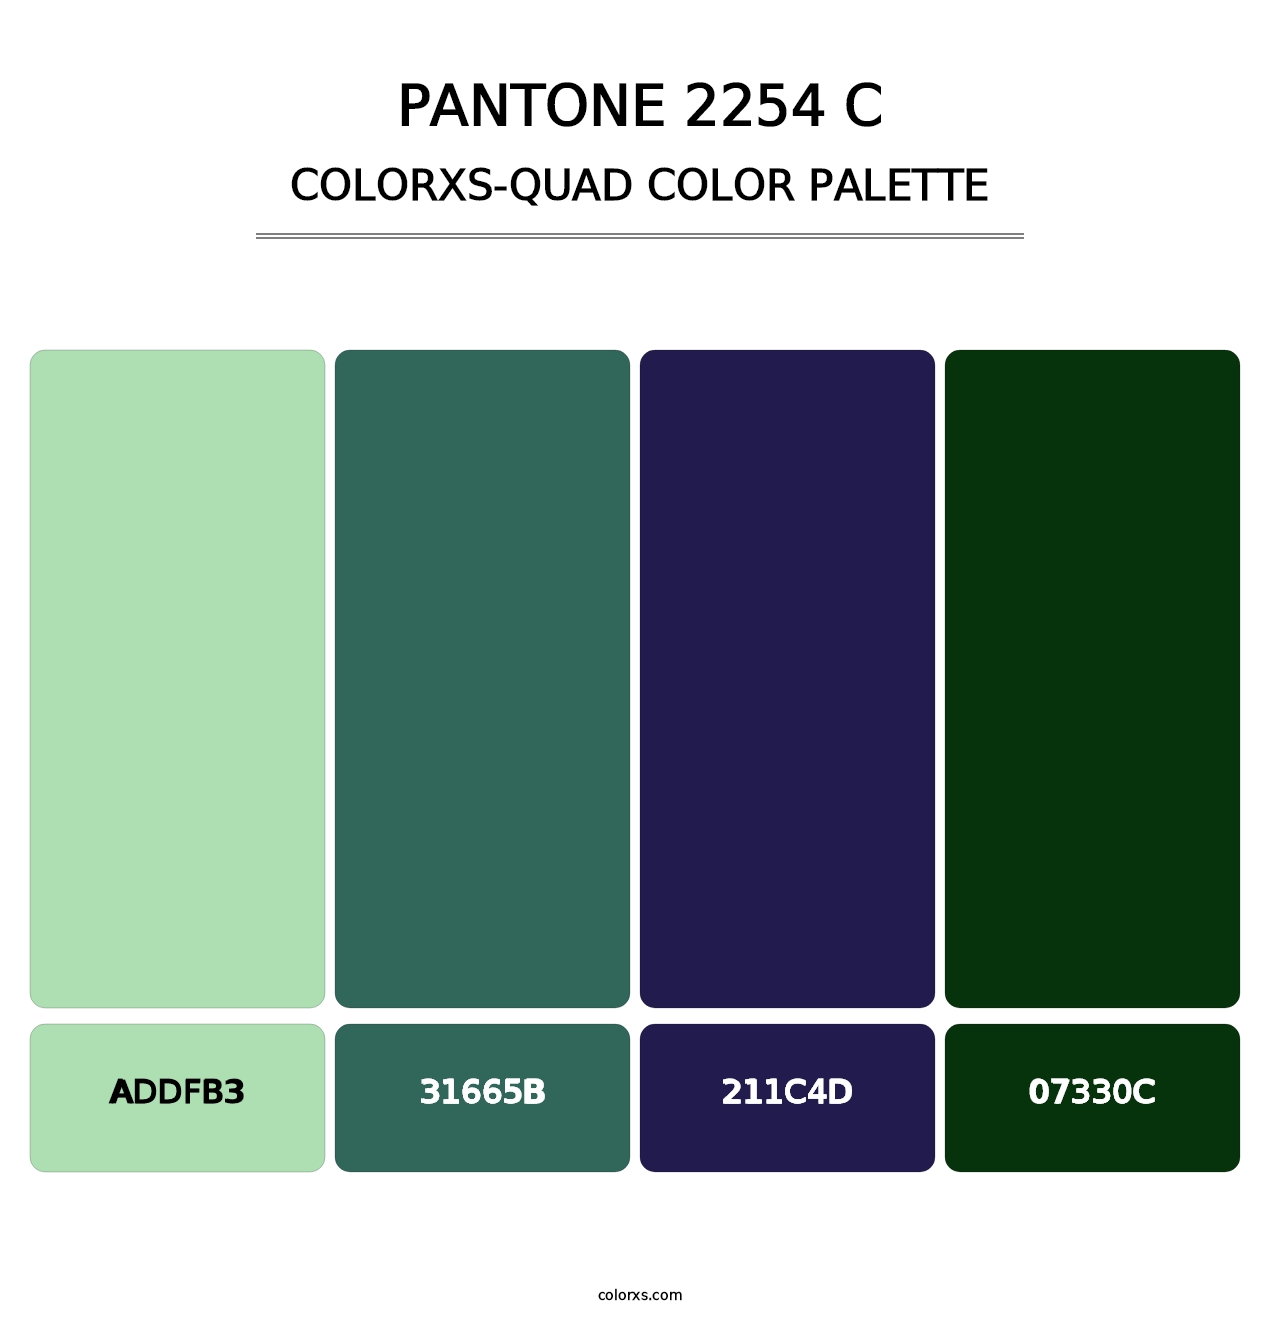 PANTONE 2254 C - Colorxs Quad Palette